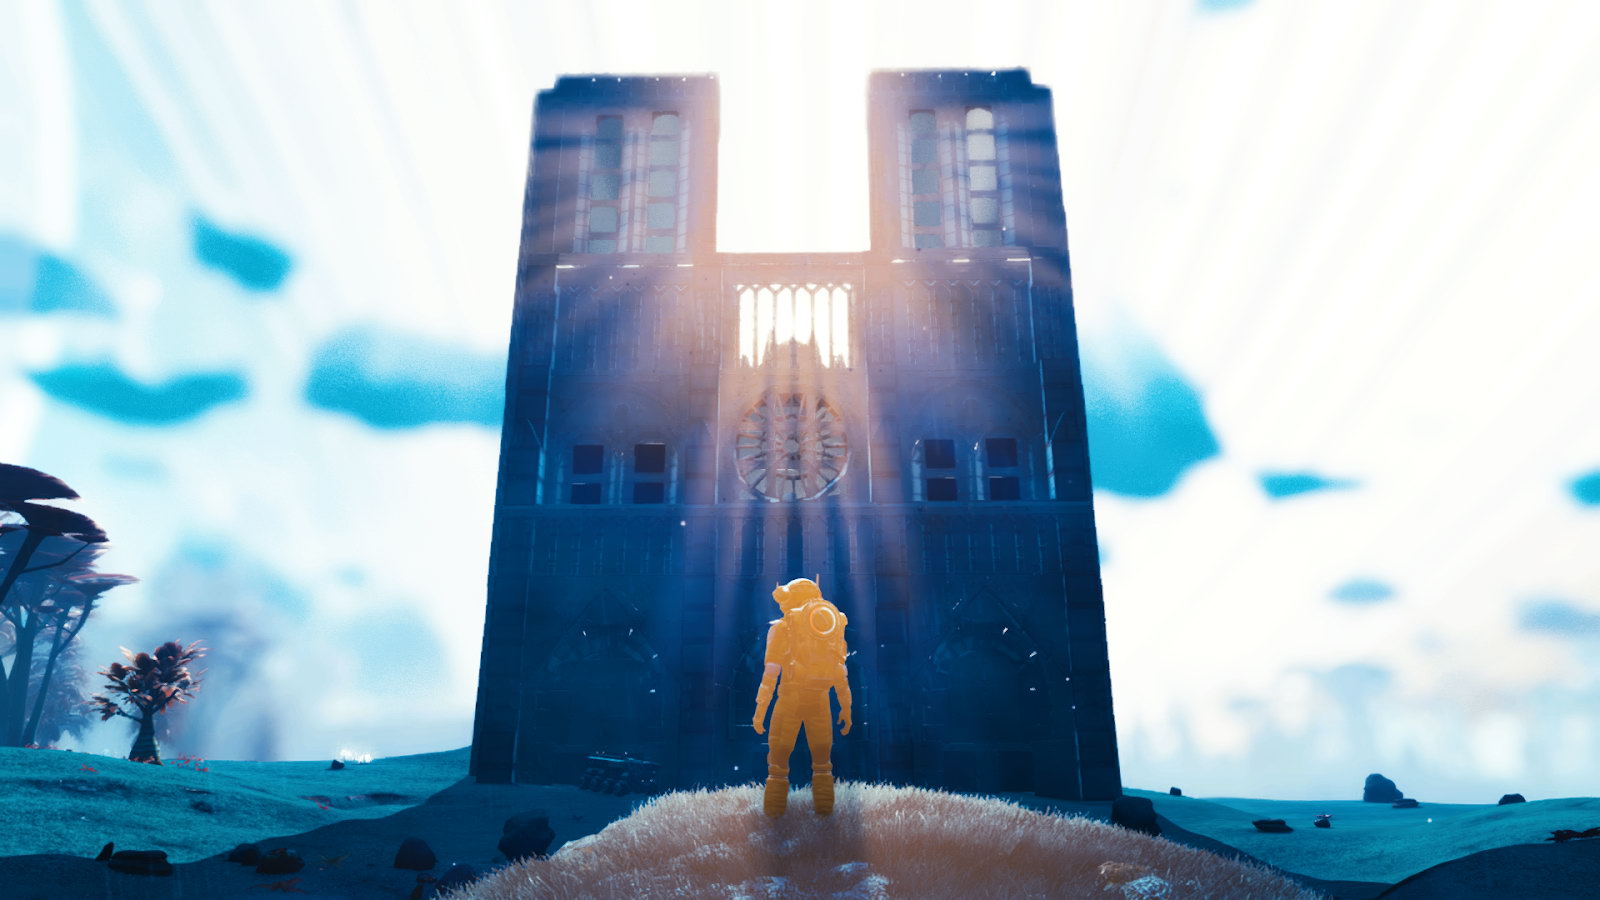 《無人深空》玩家在遊戲中建造巴黎聖母院 好評不斷